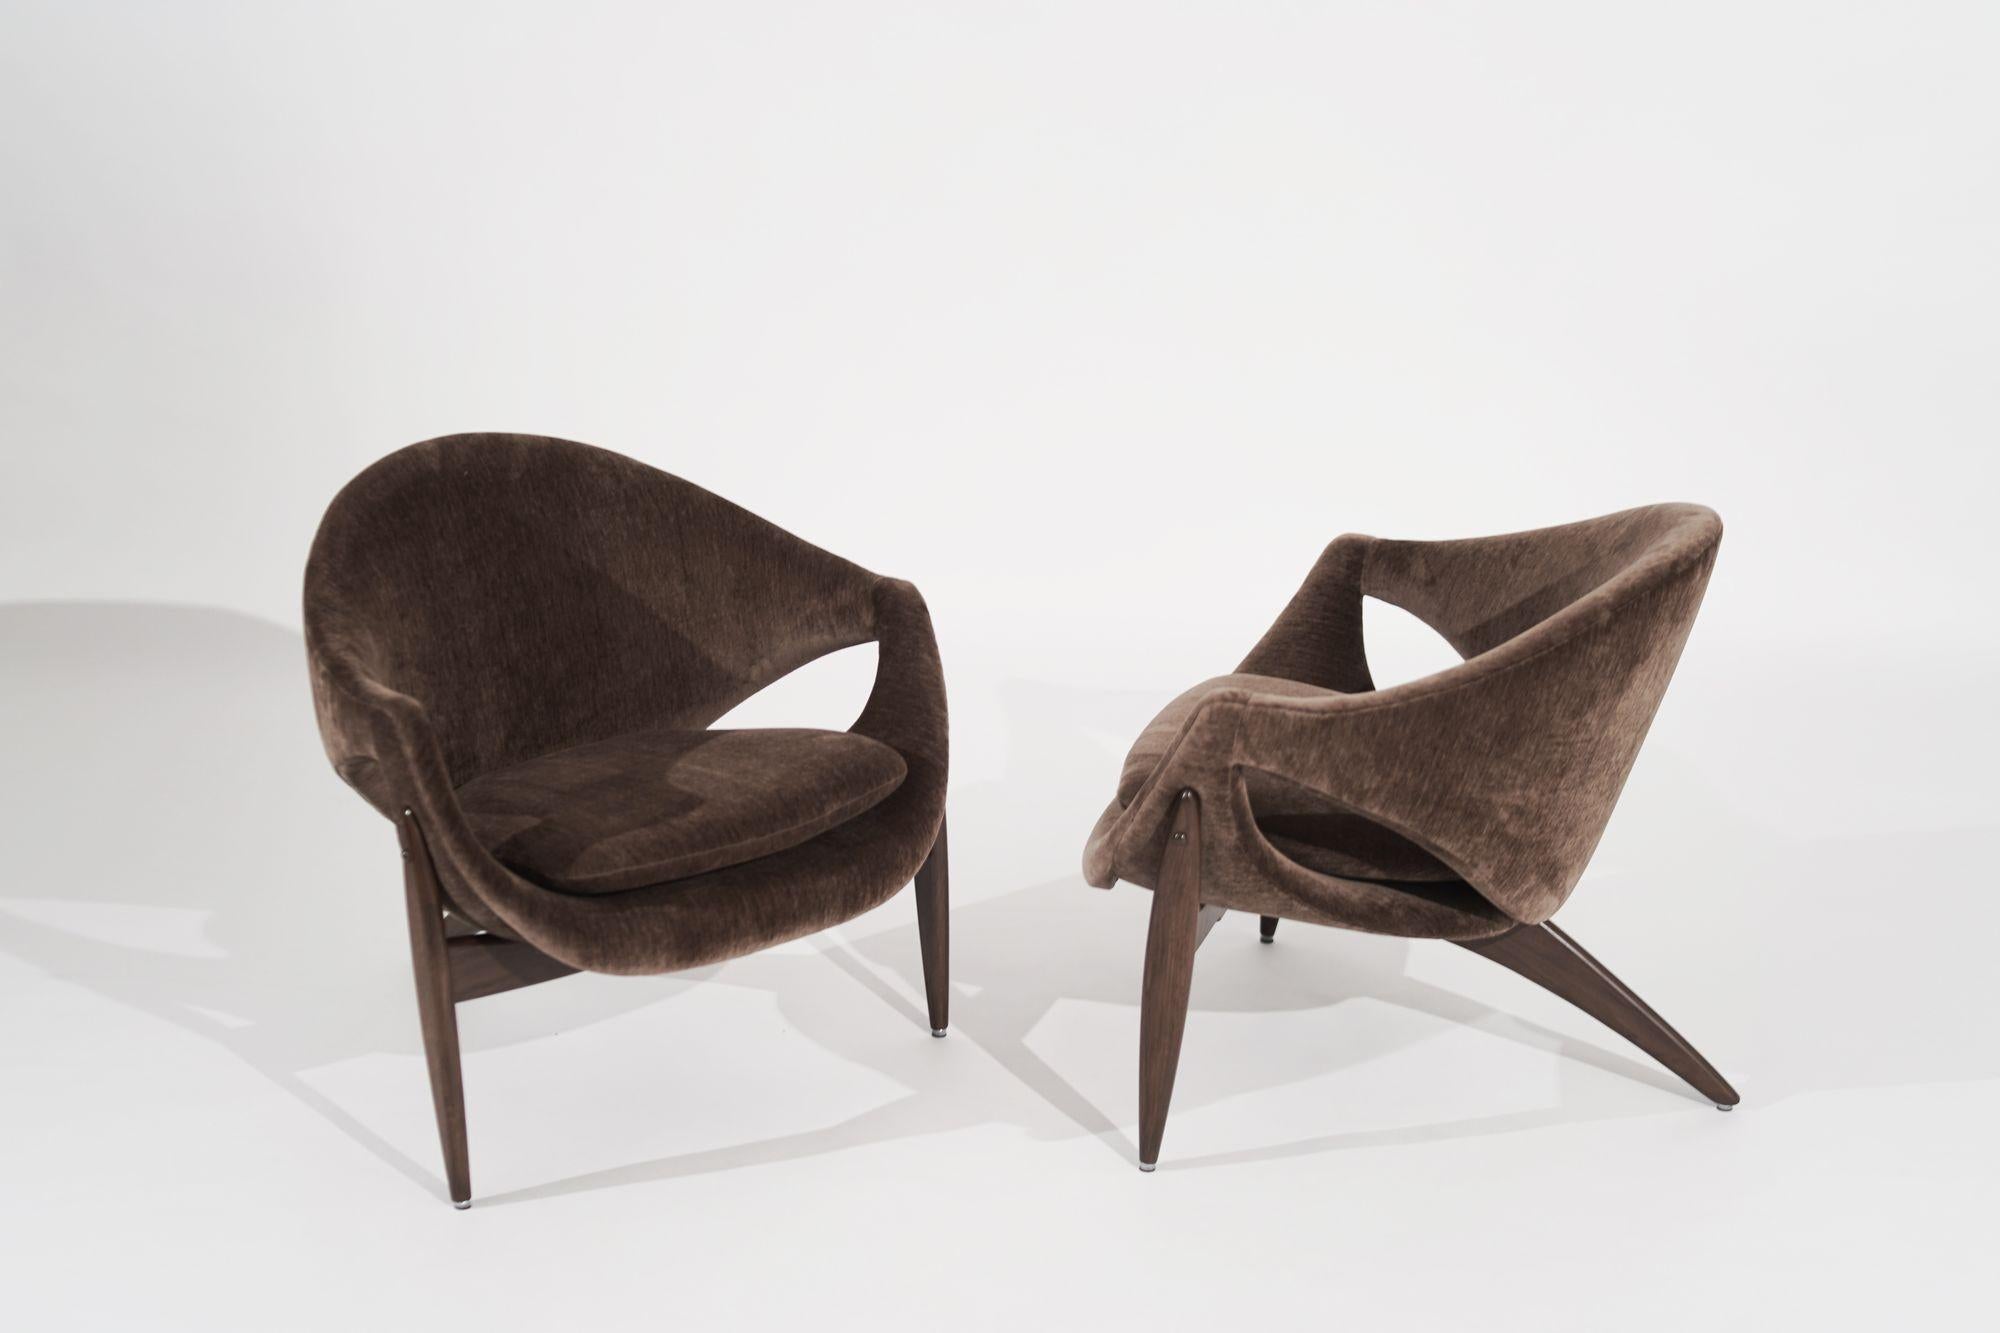 Atemberaubendes Paar Stühle, entworfen von Luigi Tiengo für Cimon in Montreal, Kanada, um 1960, jetzt vollständig restauriert in ihrer ursprünglichen Schönheit von Stamford Modern.
Mit ihrem skulpturalen Dreibeinfuß aus Nussbaumholz, der einen Hauch